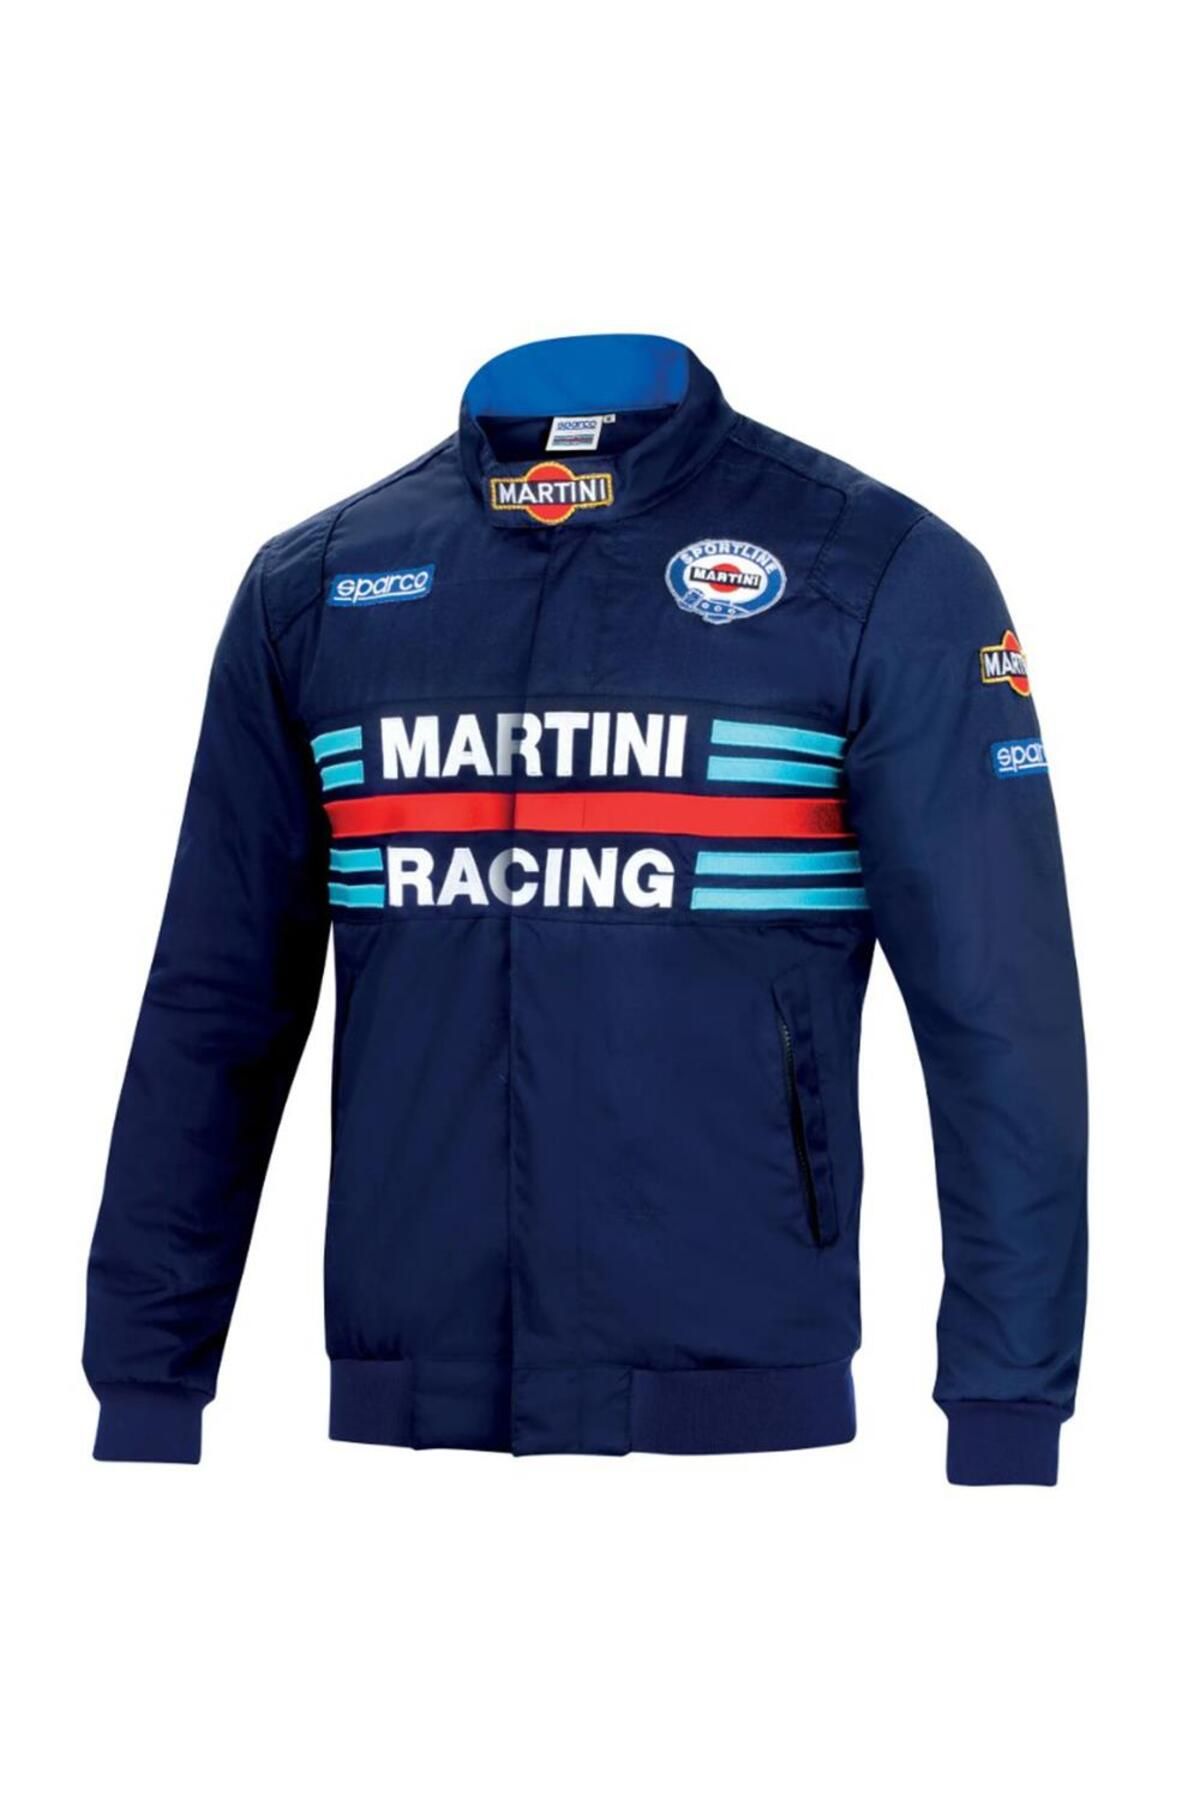 Sparco Martini Racing Boomber Ceket Lacivert Xxl Beden